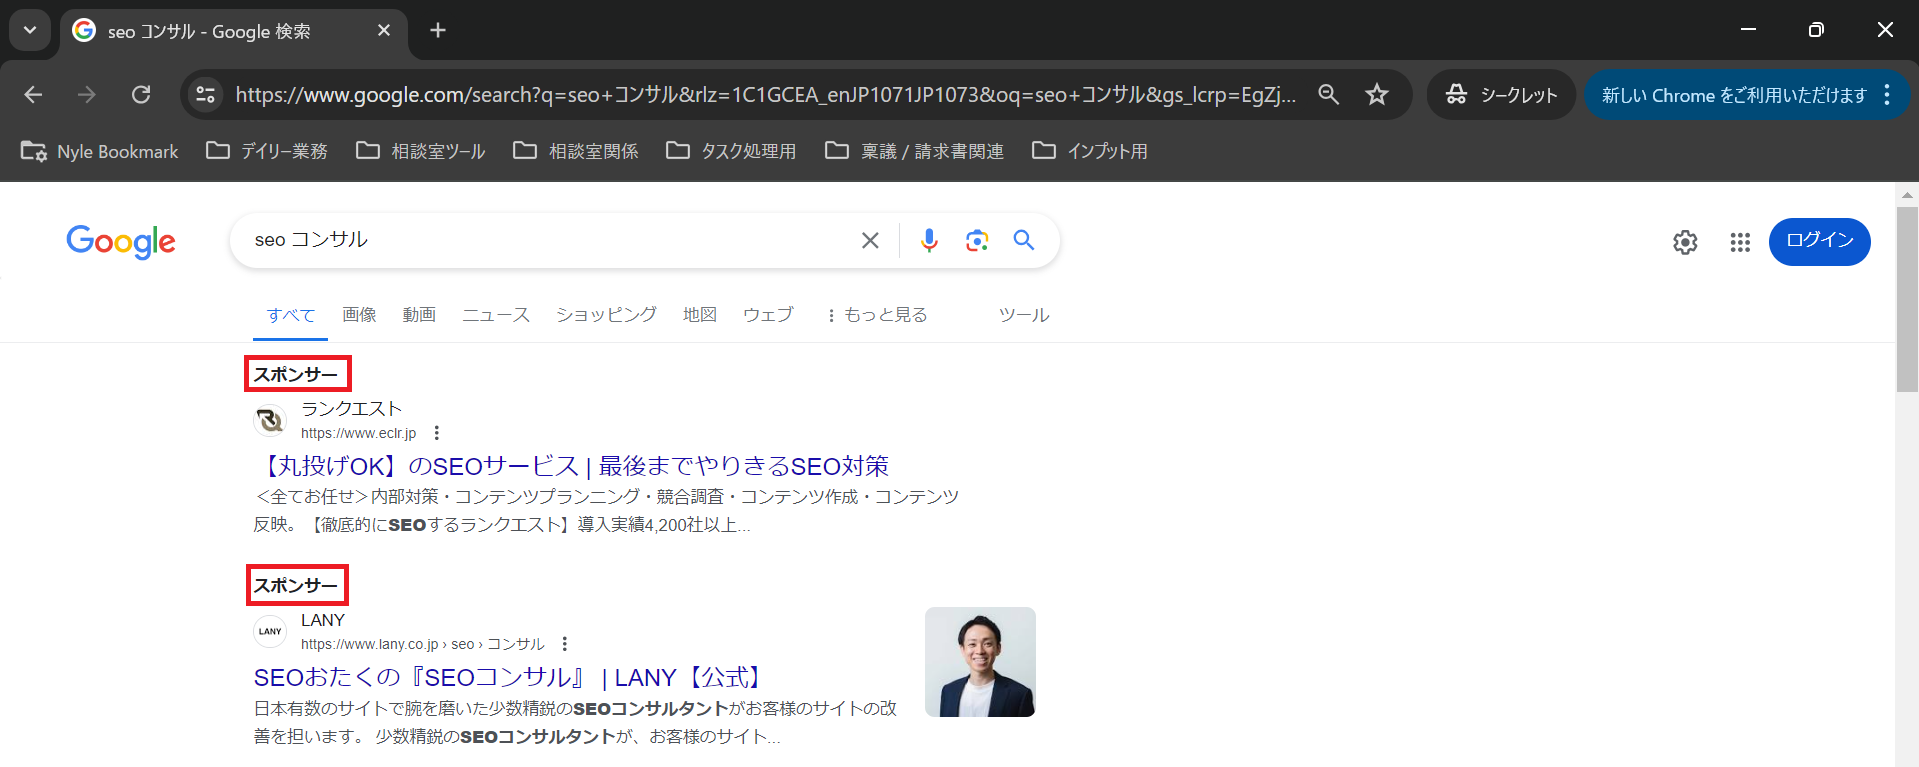 「seoコンサル」と検索し、リスティング広告が縦に2つ並ぶGoogle検索結果画面キャプチャ